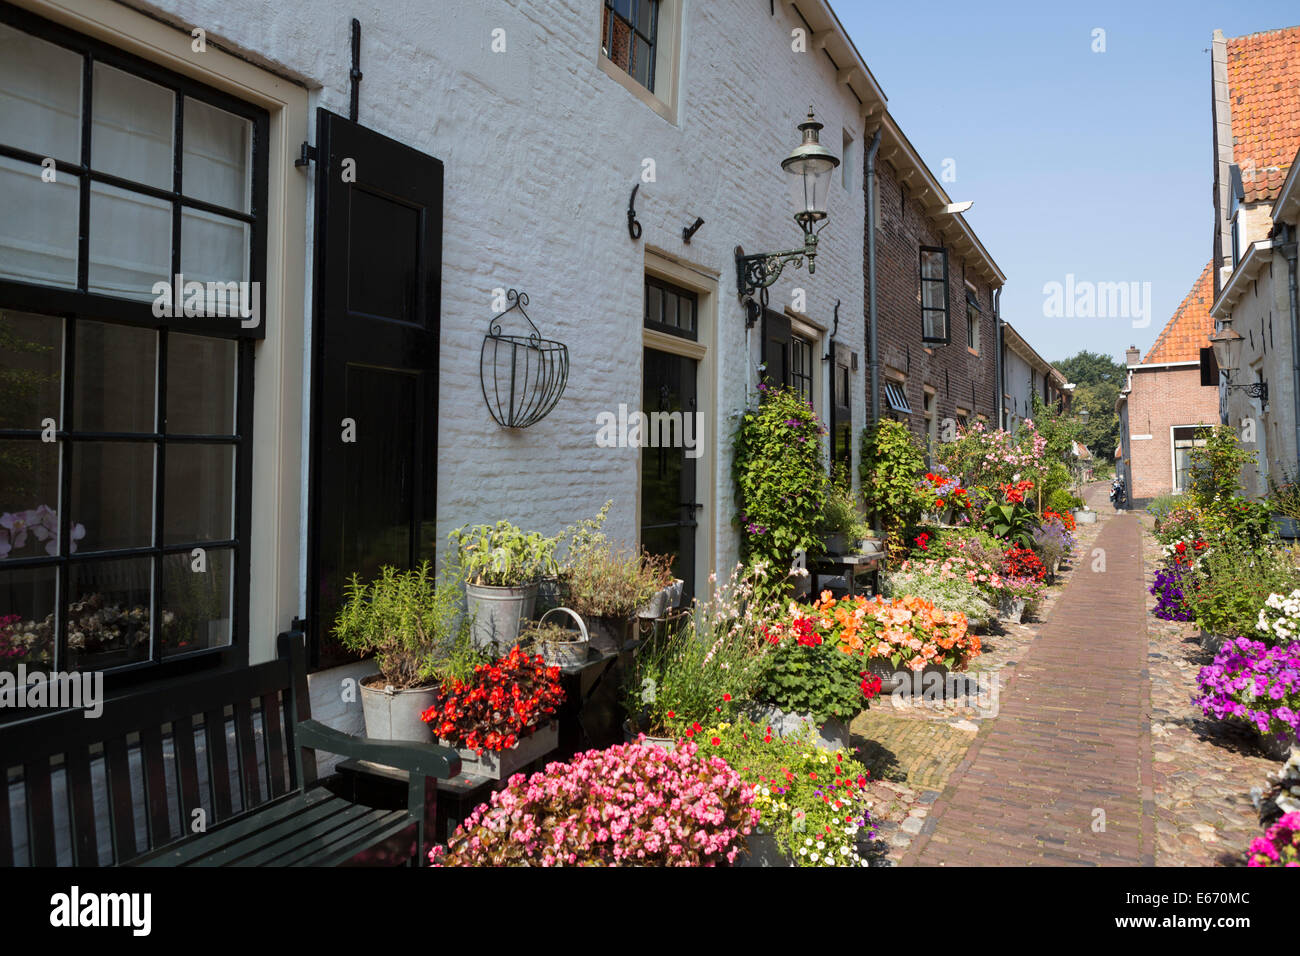 Rue nostalgique romantique avec des fleurs colorées de l'ancienne ville hanséatique 'Elburg" aux Pays-Bas Banque D'Images